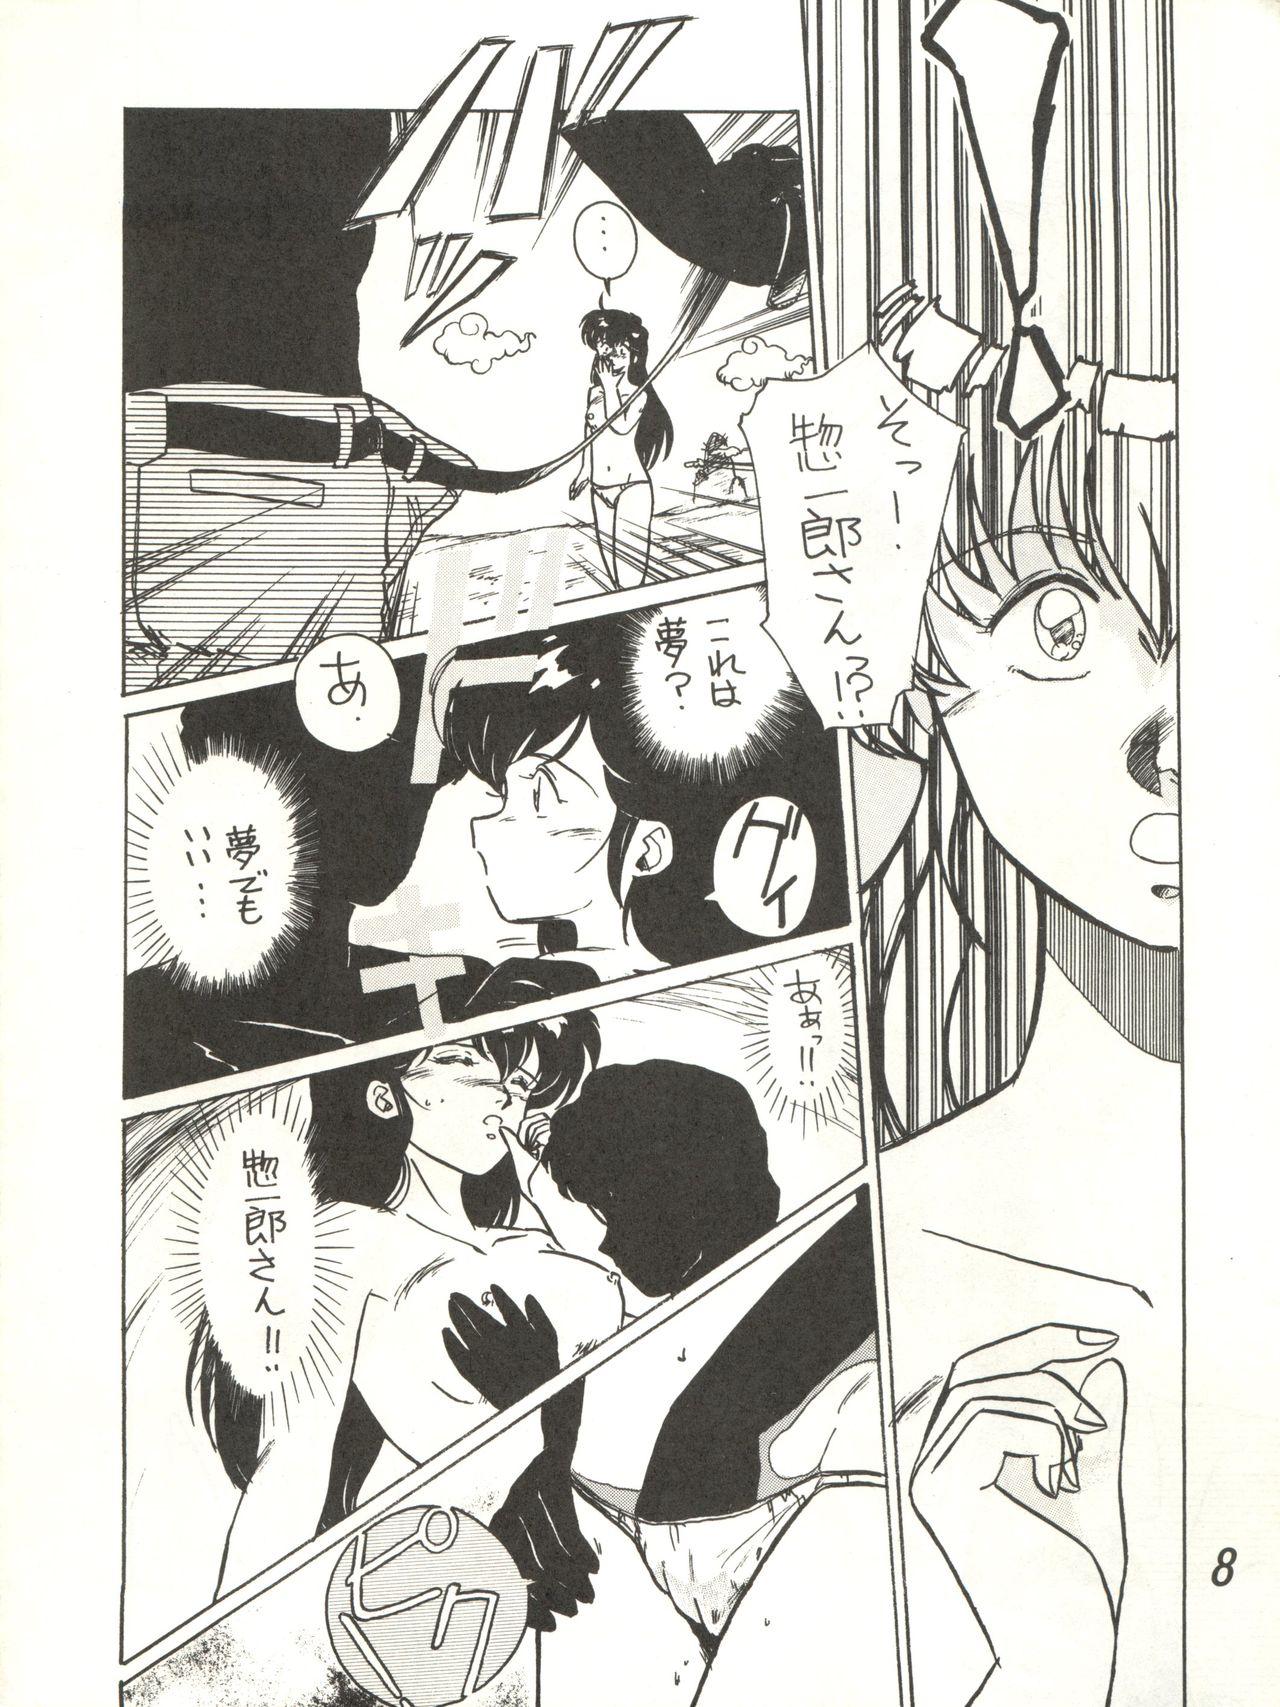 Publico Ikkoku-kan 0 Gou Shitsu Part V - Maison ikkoku Nena - Page 8